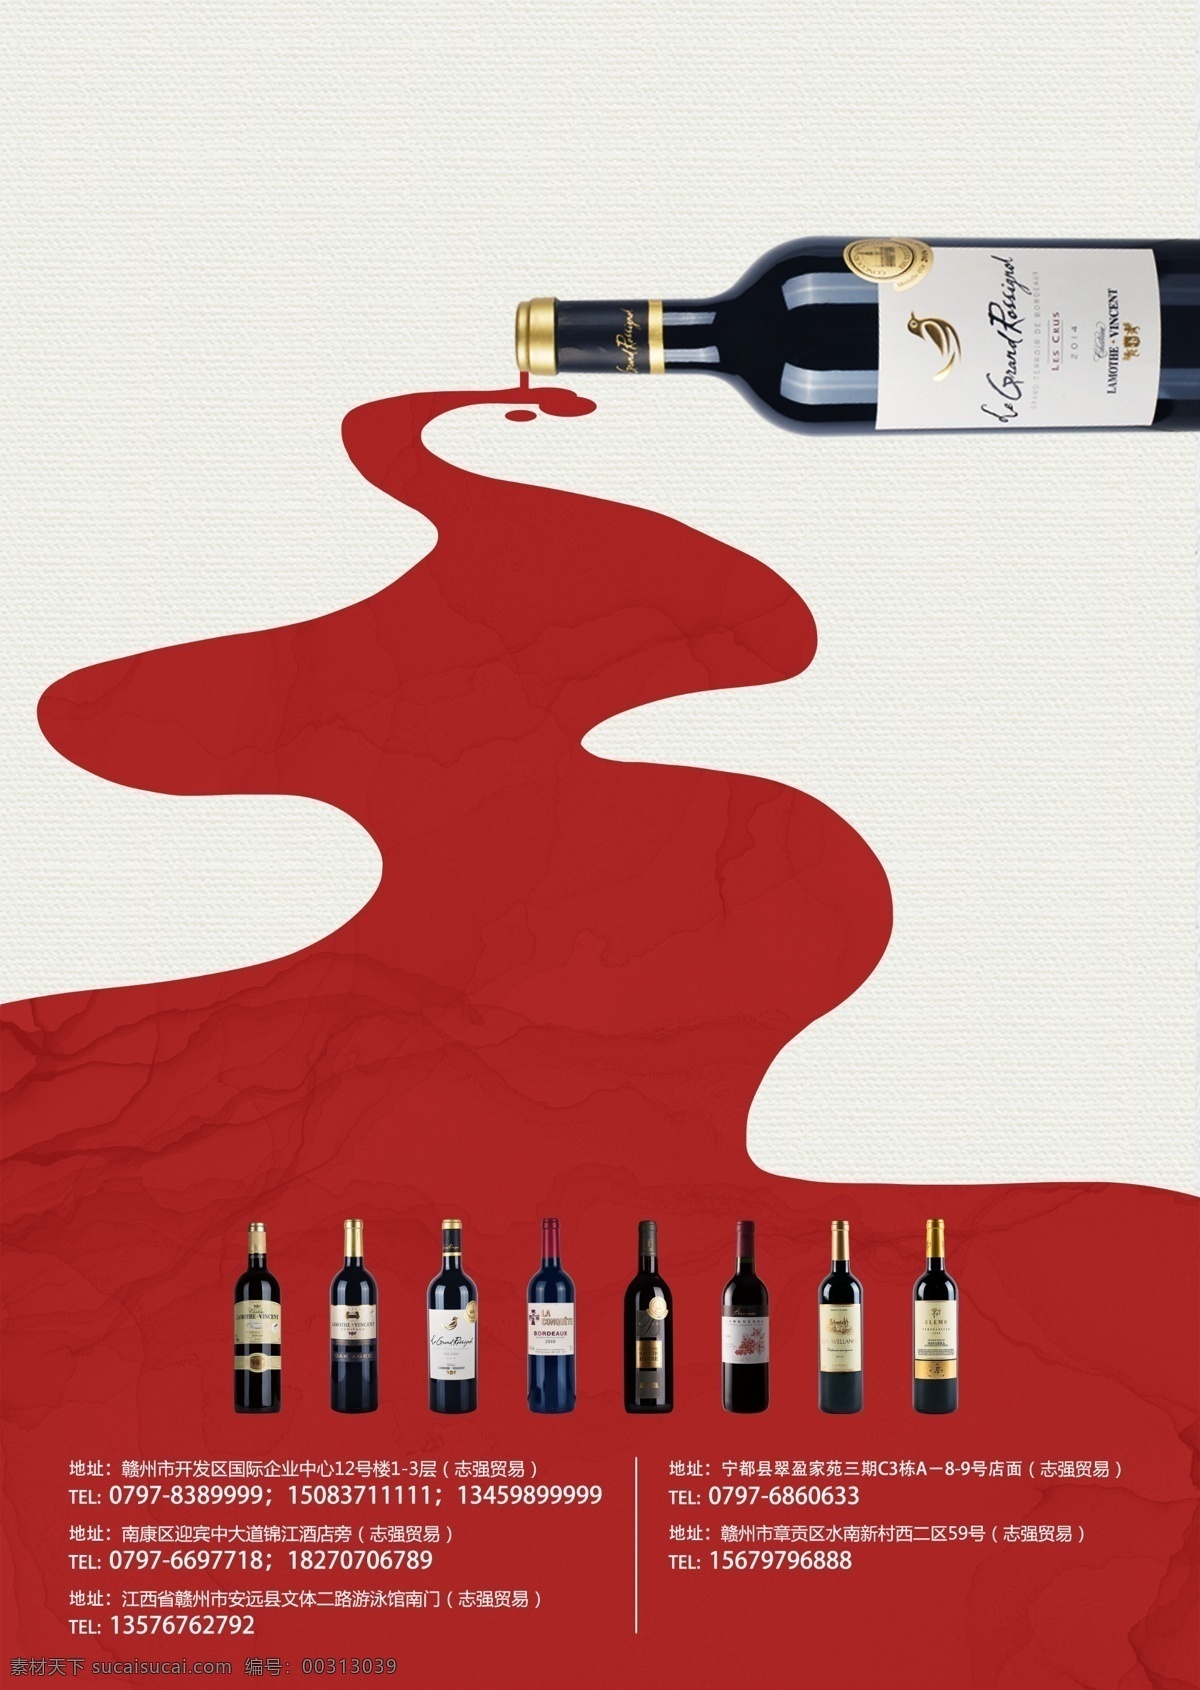 葡萄酒 简约 开业 海报 开业海报 红酒 葡萄酒海报 红酒海报 简约海报 极简海报 酒水类海报 分层